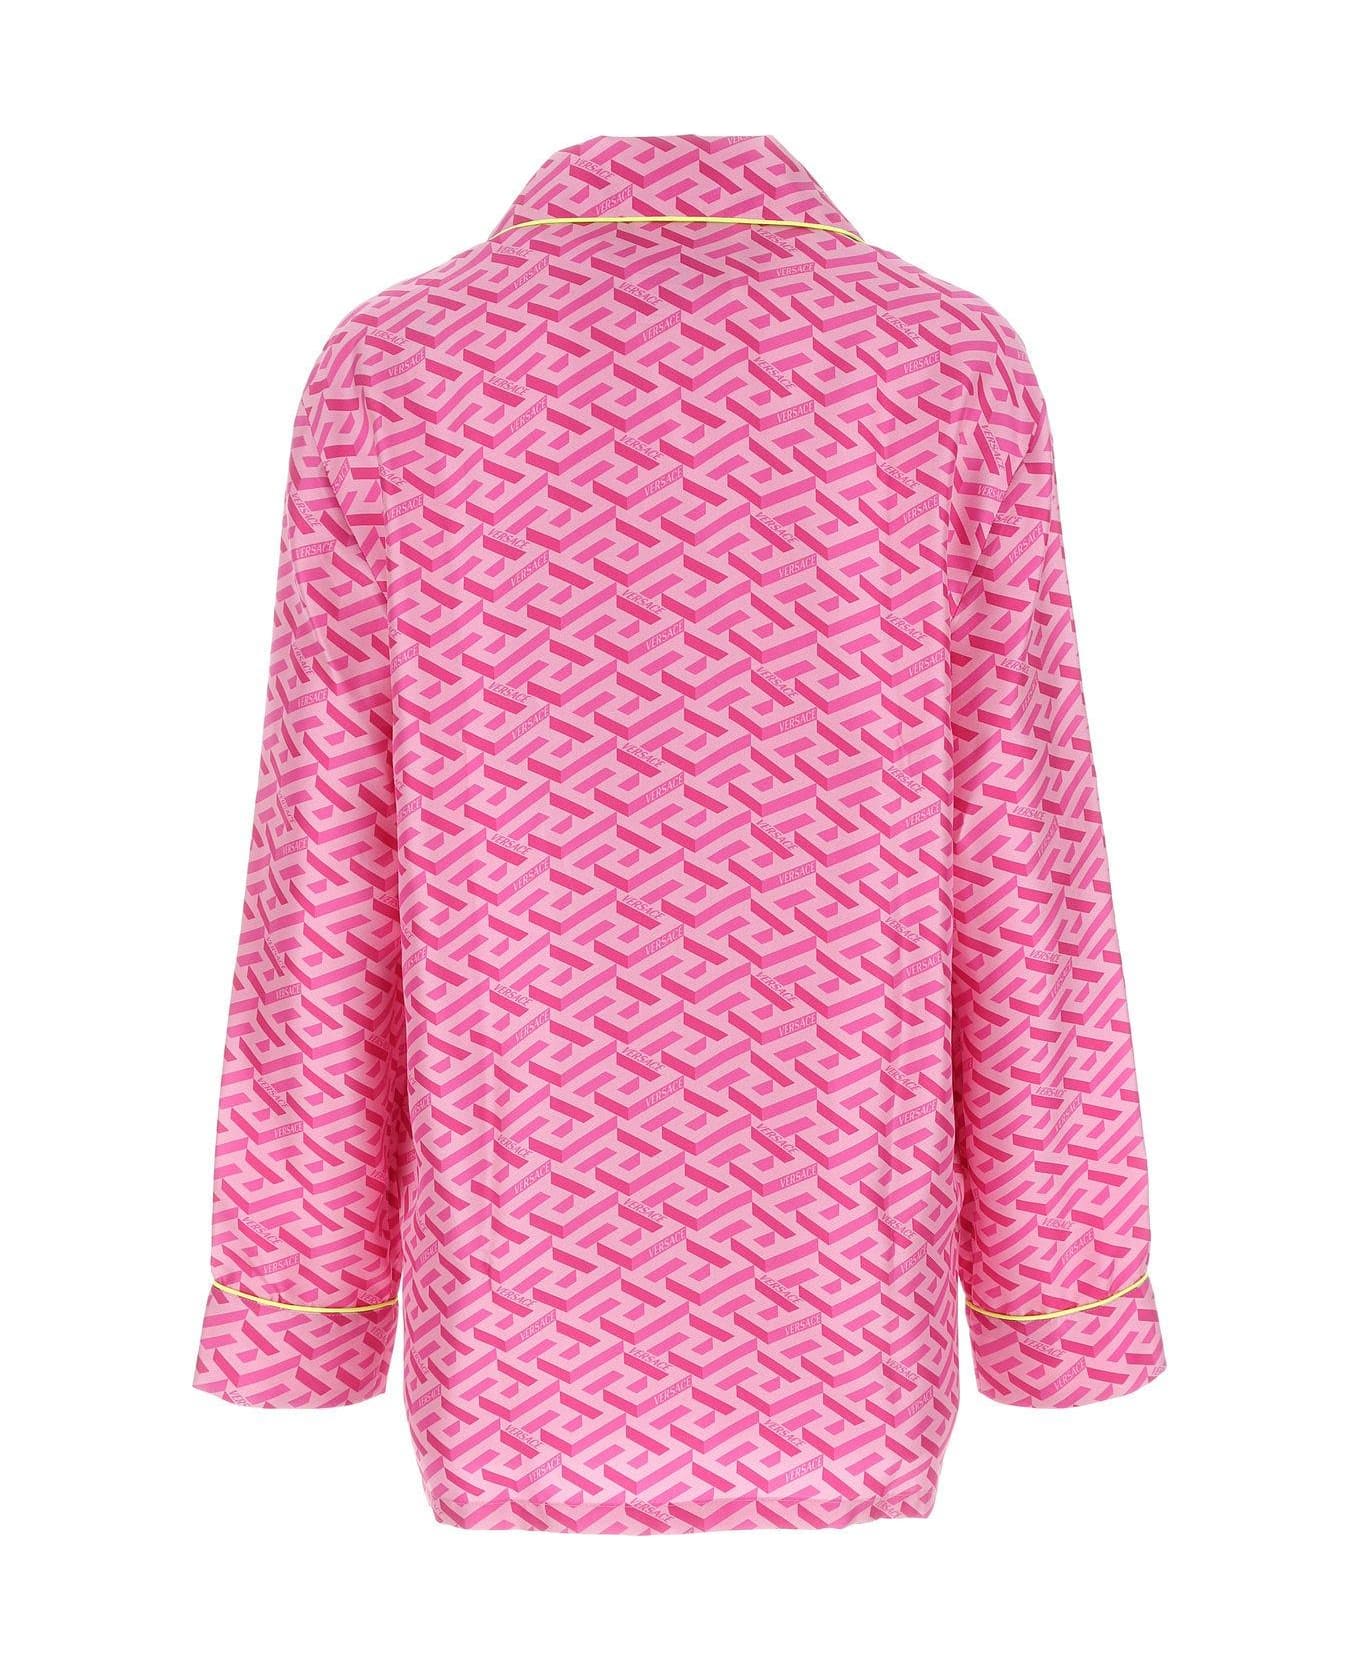 Versace Printed Satin Pijama Shirt - PINK ショーツ